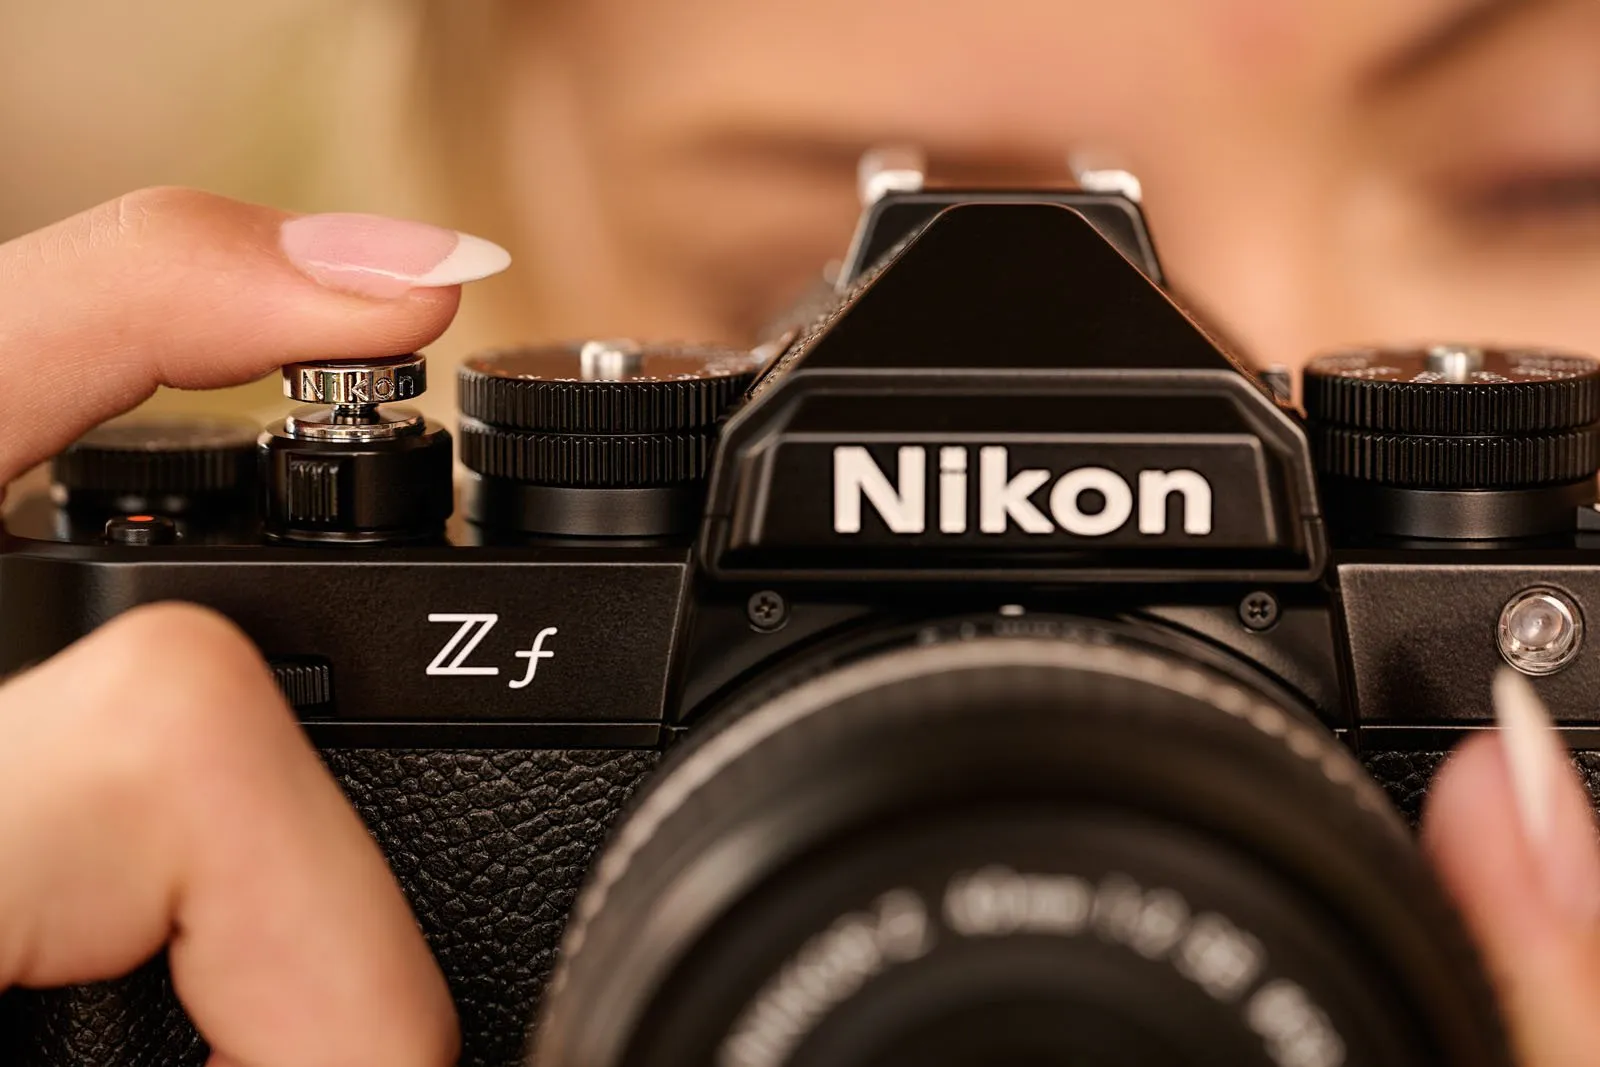 Nikon ra mắt máy ảnh Nikon Zf với thiết kế cổ điển, tích hợp lấy nét AF nhiều chủ thể và cảm biến full frame 24.5MP